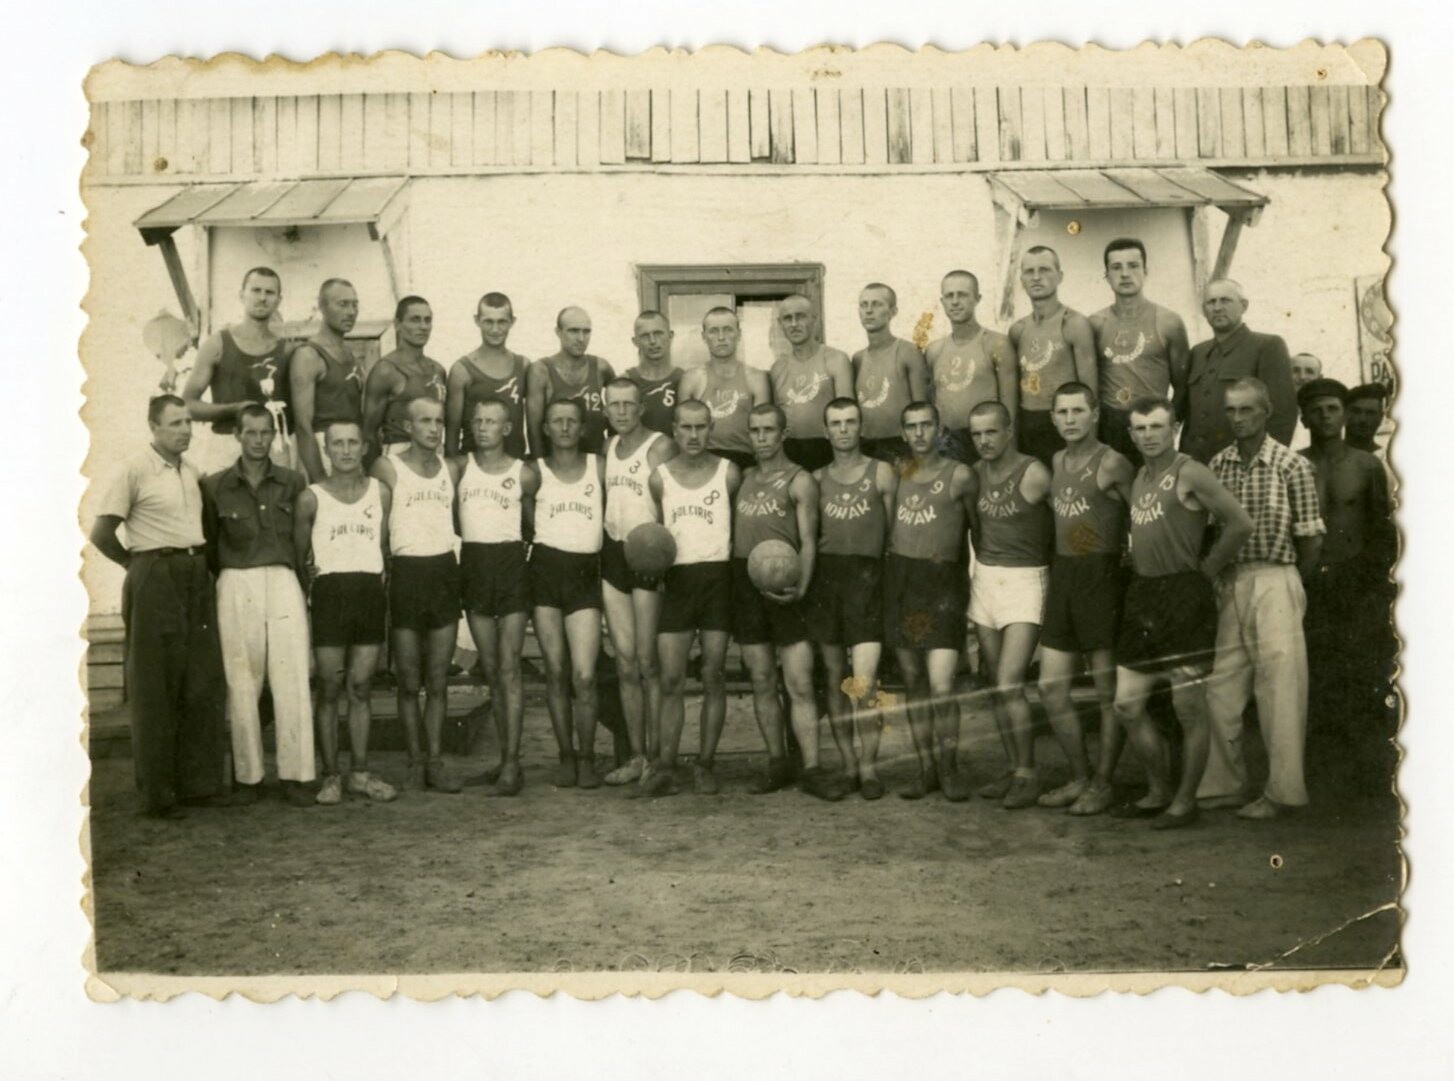 Omsko lagerio krepšininkų rinktinės. Pirmoje eilėje – lietuvių komanda „Žalgiris“ (kairėje) ir ukrainiečių komanda „Junak“, antroje eilėje – latvių komanda (kairėje) ir lietuvių komanda „Strėlė“. 1954 m. LGGRTC OKUPACIJŲ IR LAISVĖS KOVŲ MUZIEJAUS RINKINIŲ nuotr.